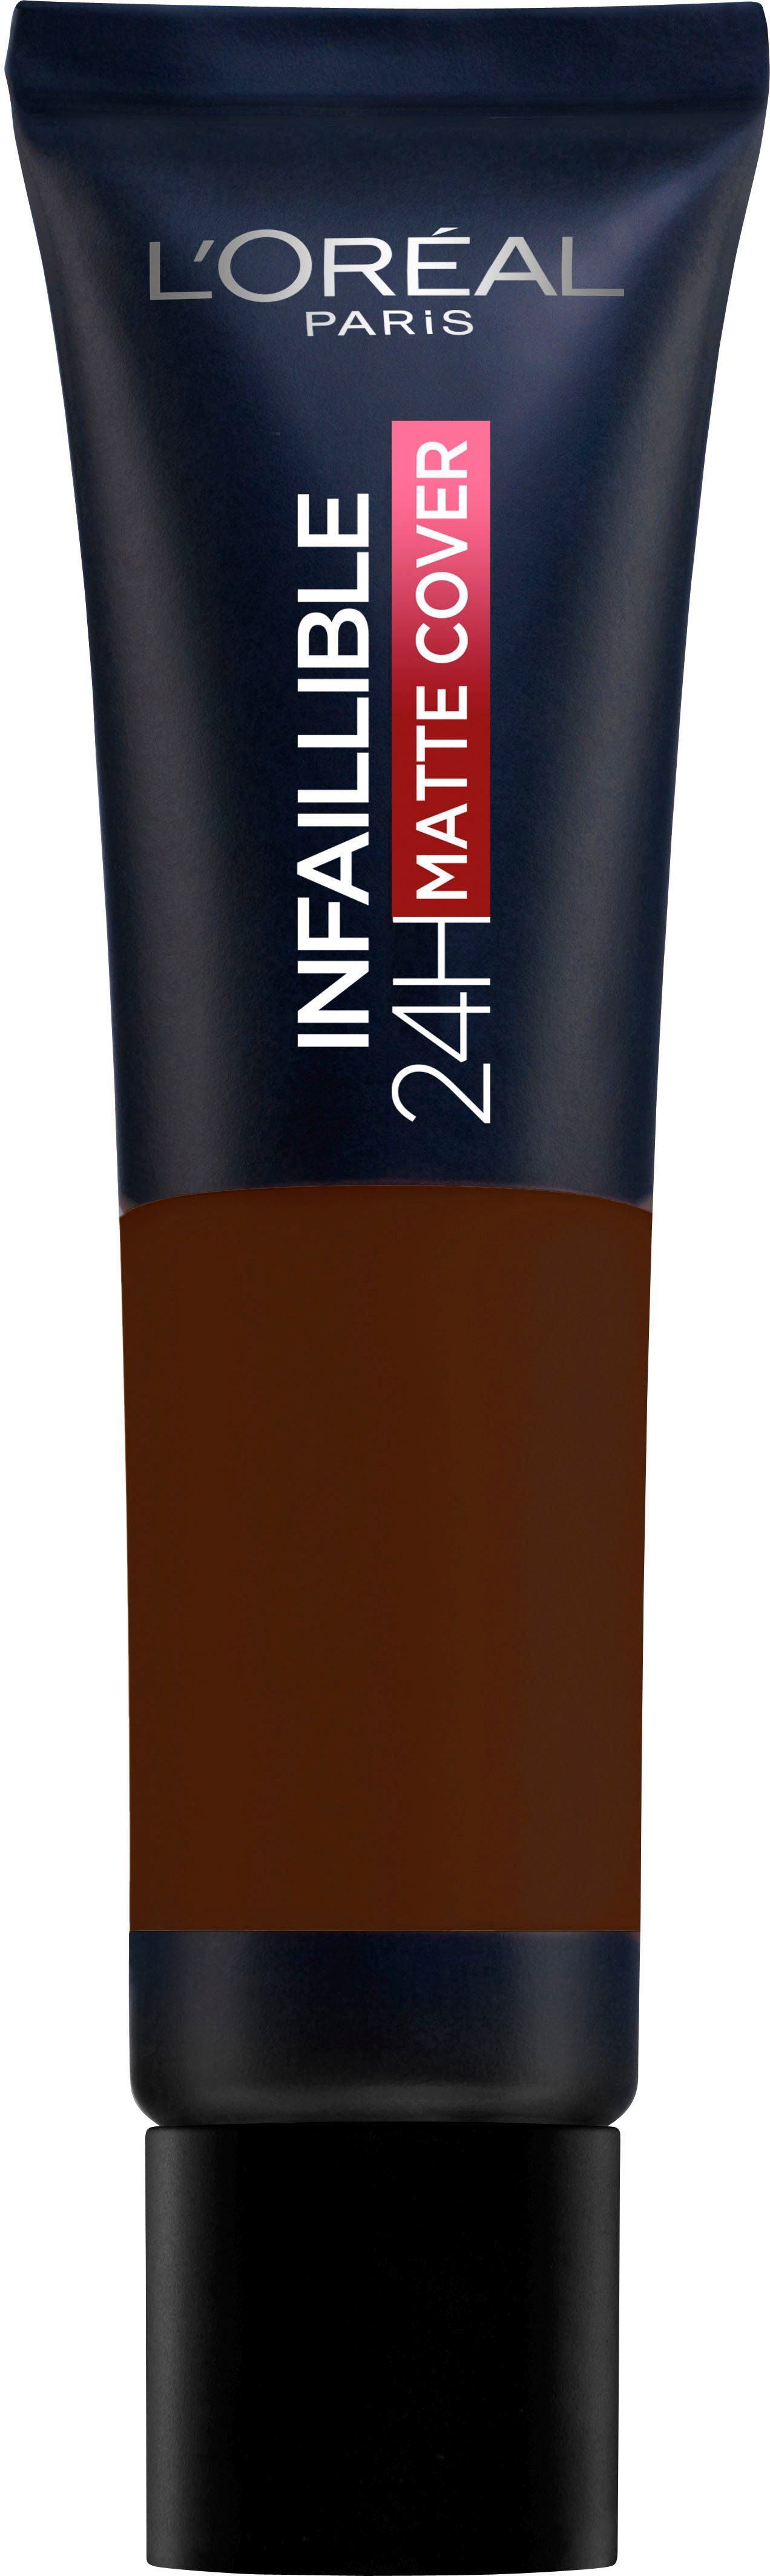 L'ORÉAL PARIS Foundation L'Oréal Paris Infaillible 32H Matte Cover, Mit 4%  Niacinamiden für einen ebenmäßigen & mattierten Teint